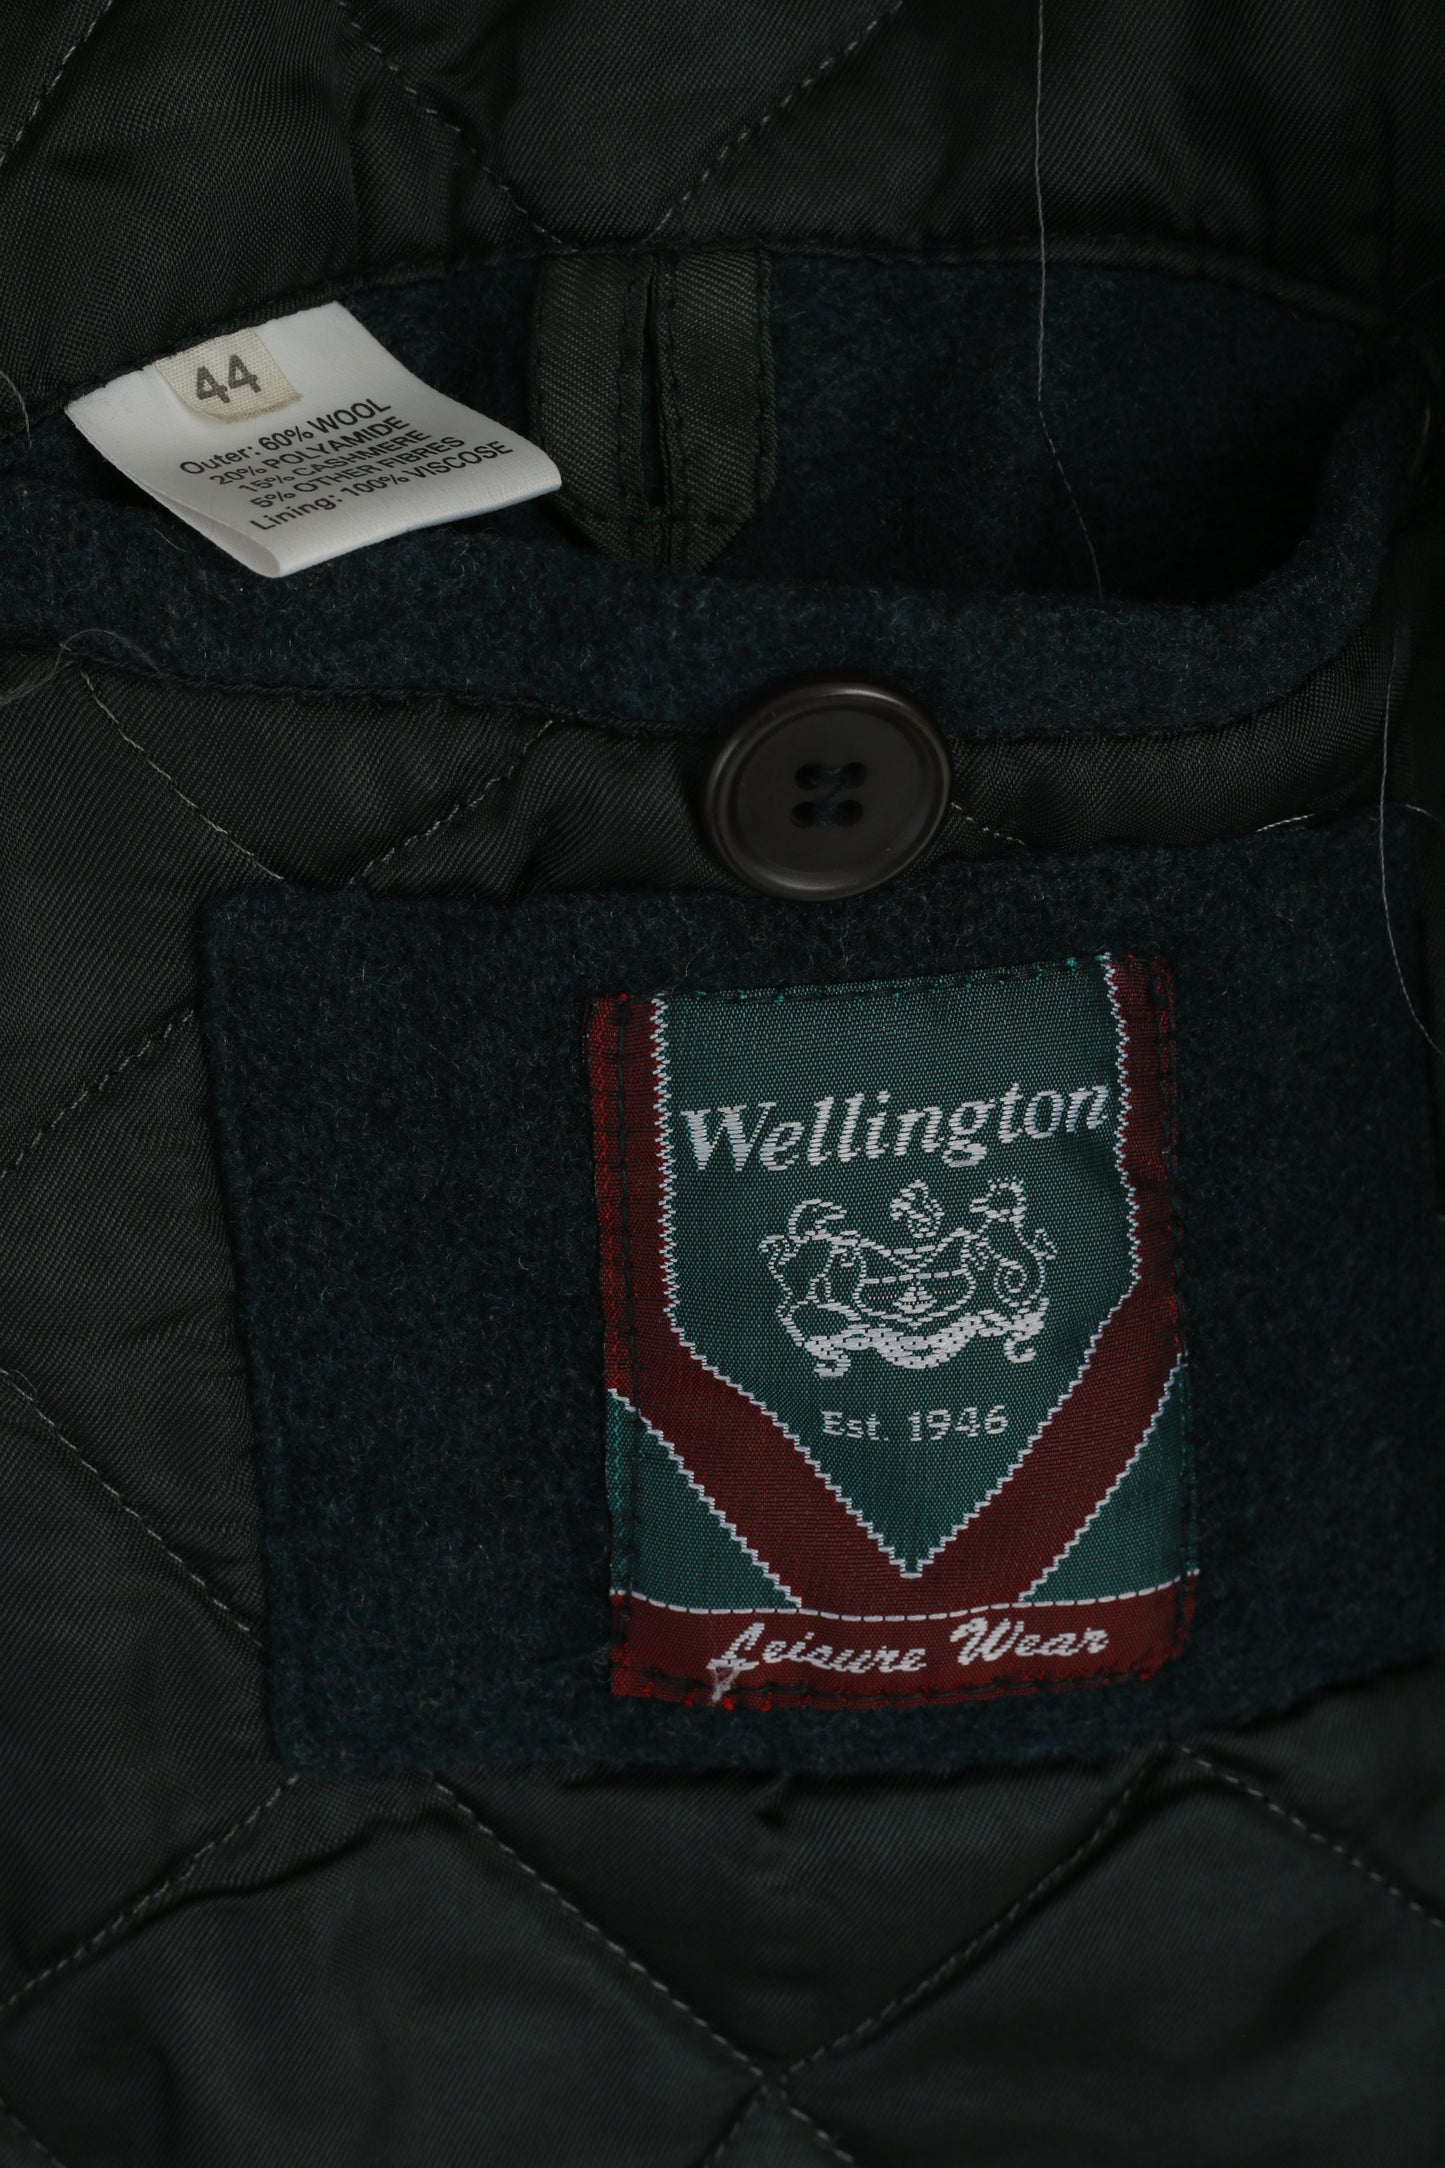 Wellington Men 44 L Coat Bottle Green Wool Cashmere Vintage Full Zipper Leisure Wear Top